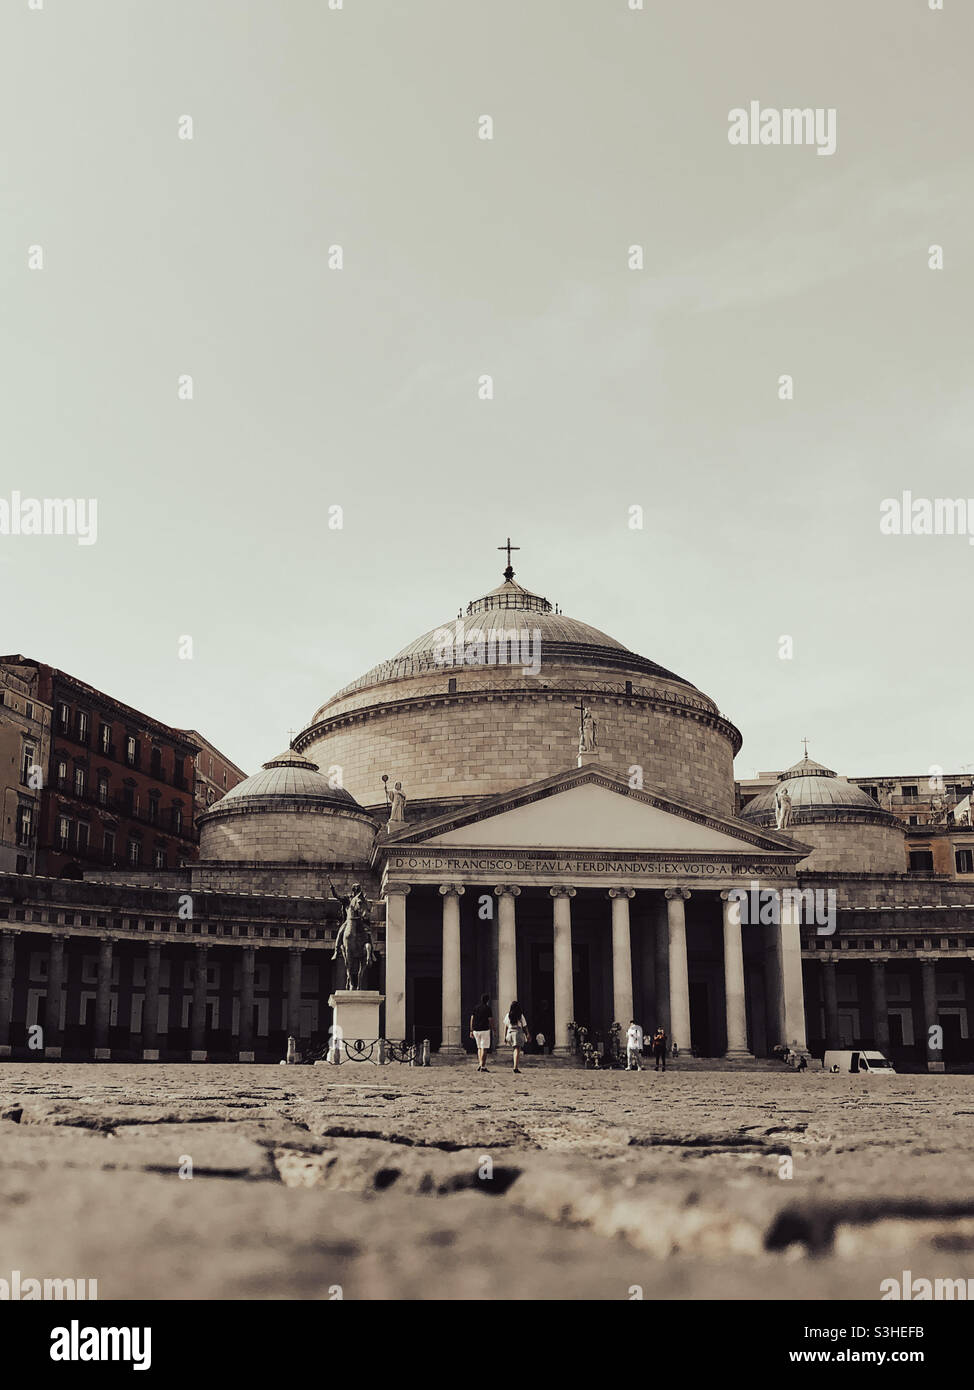 Piazza del Plebiscito - einer der wichtigsten Plätze der Stadt in Neapel, Italien. Es beherbergt die Basilika San Francesco da Paola, die ähnlich dem Pantheon in Rom gestaltet wurde Stockfoto